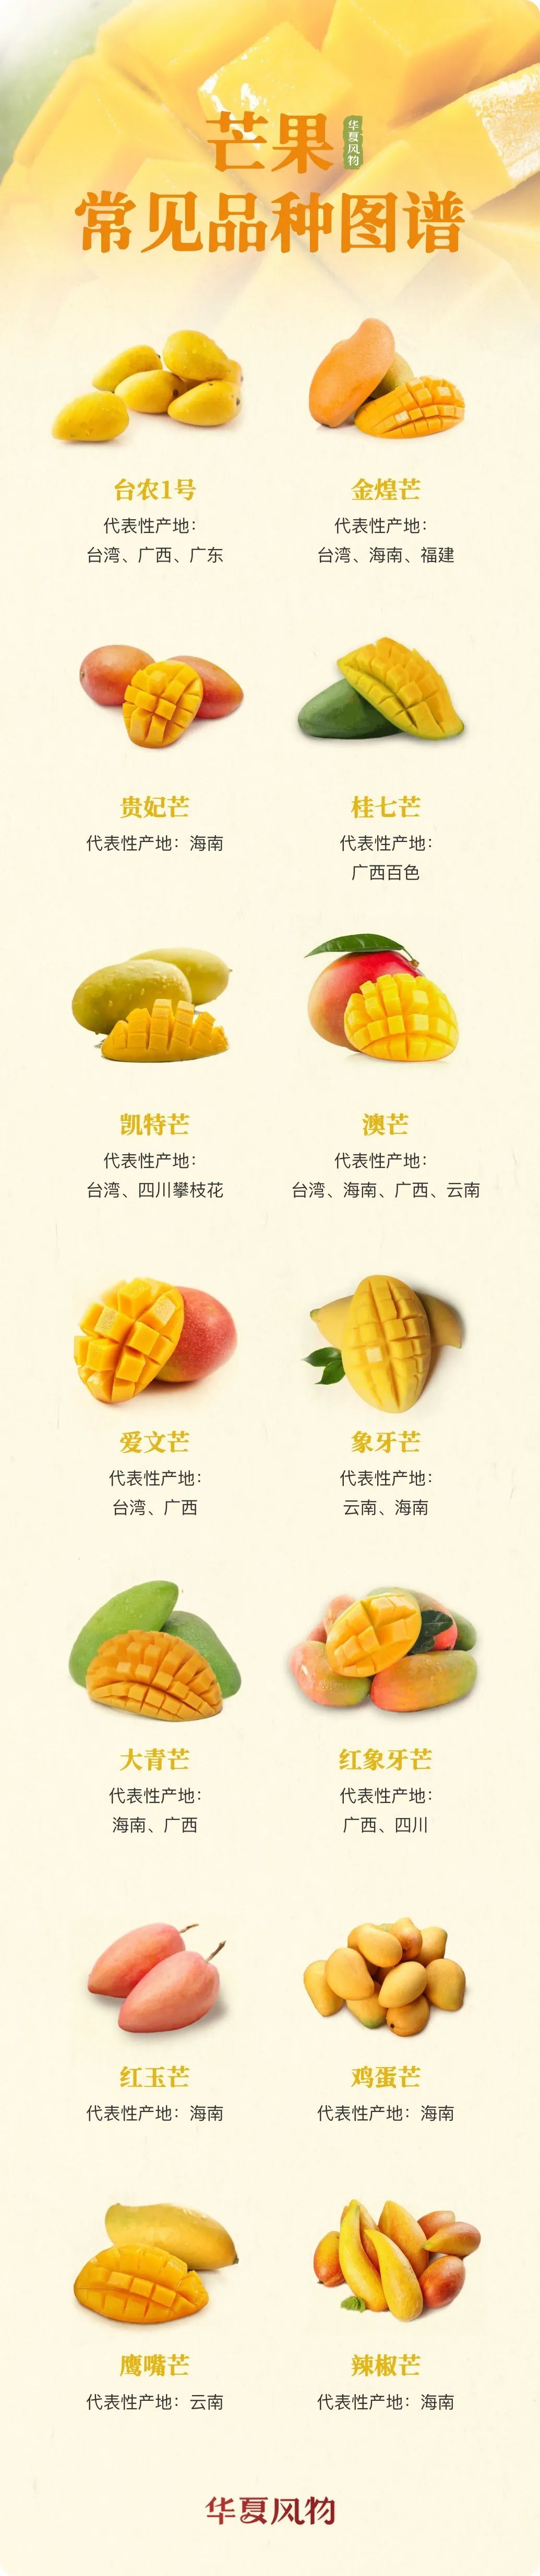 芒果常见品种图鉴 ©华夏风物